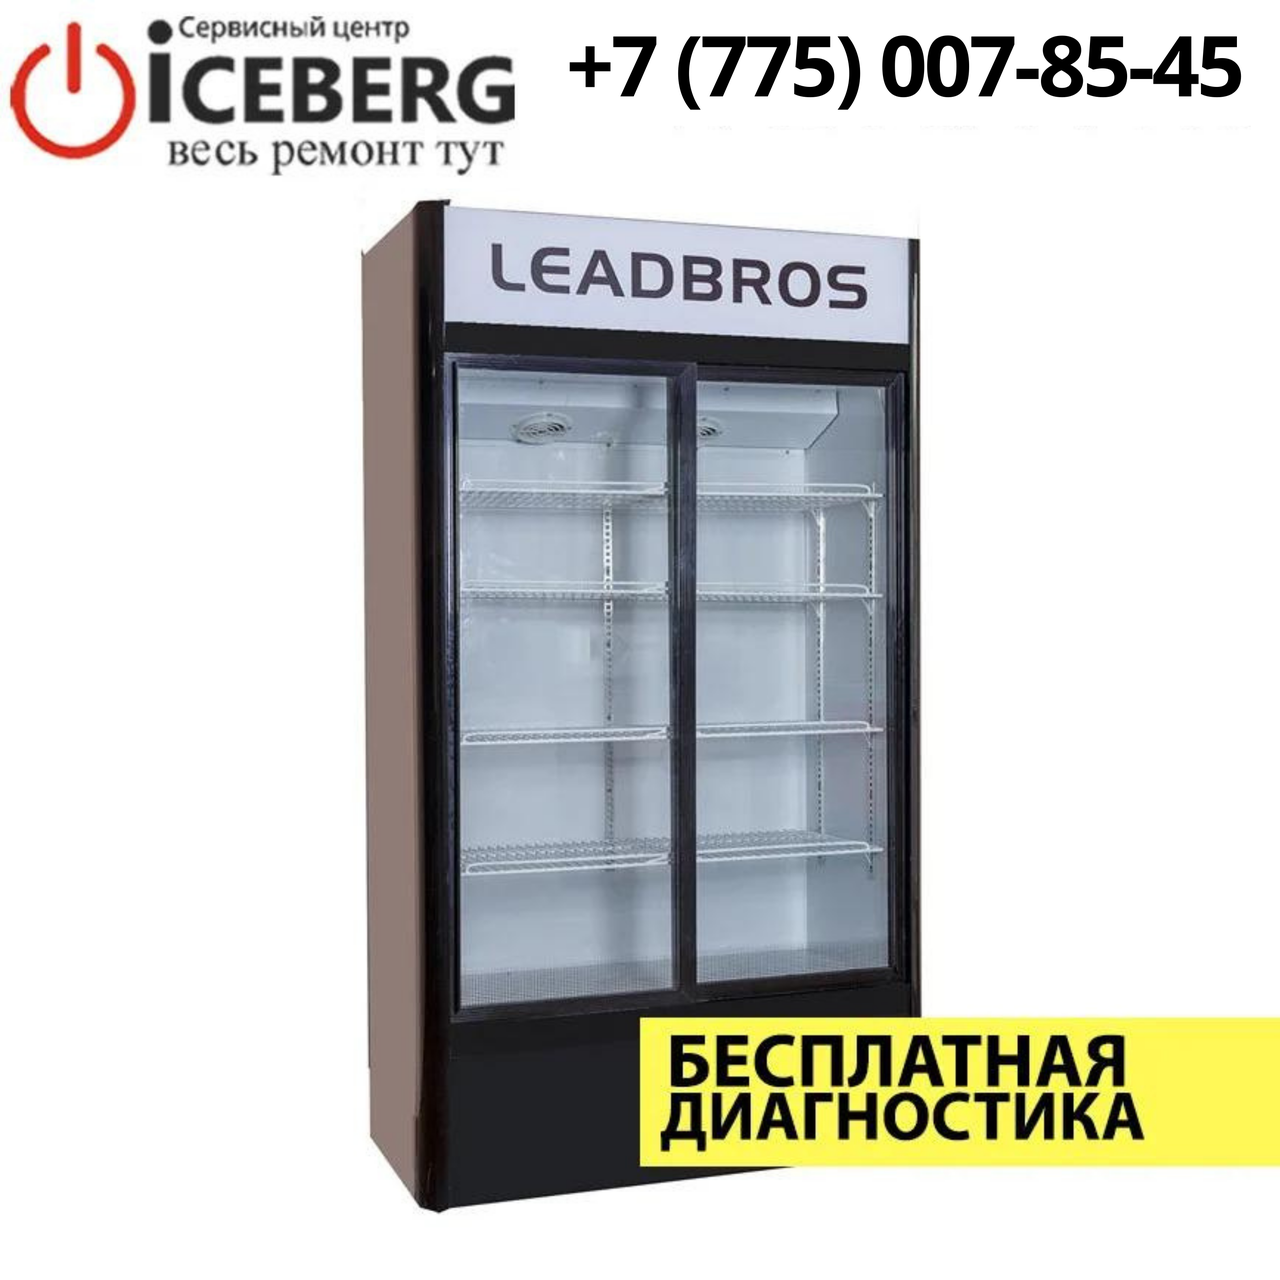 Ремонт торгового-промышленного холодильника Leadbros в Алматы